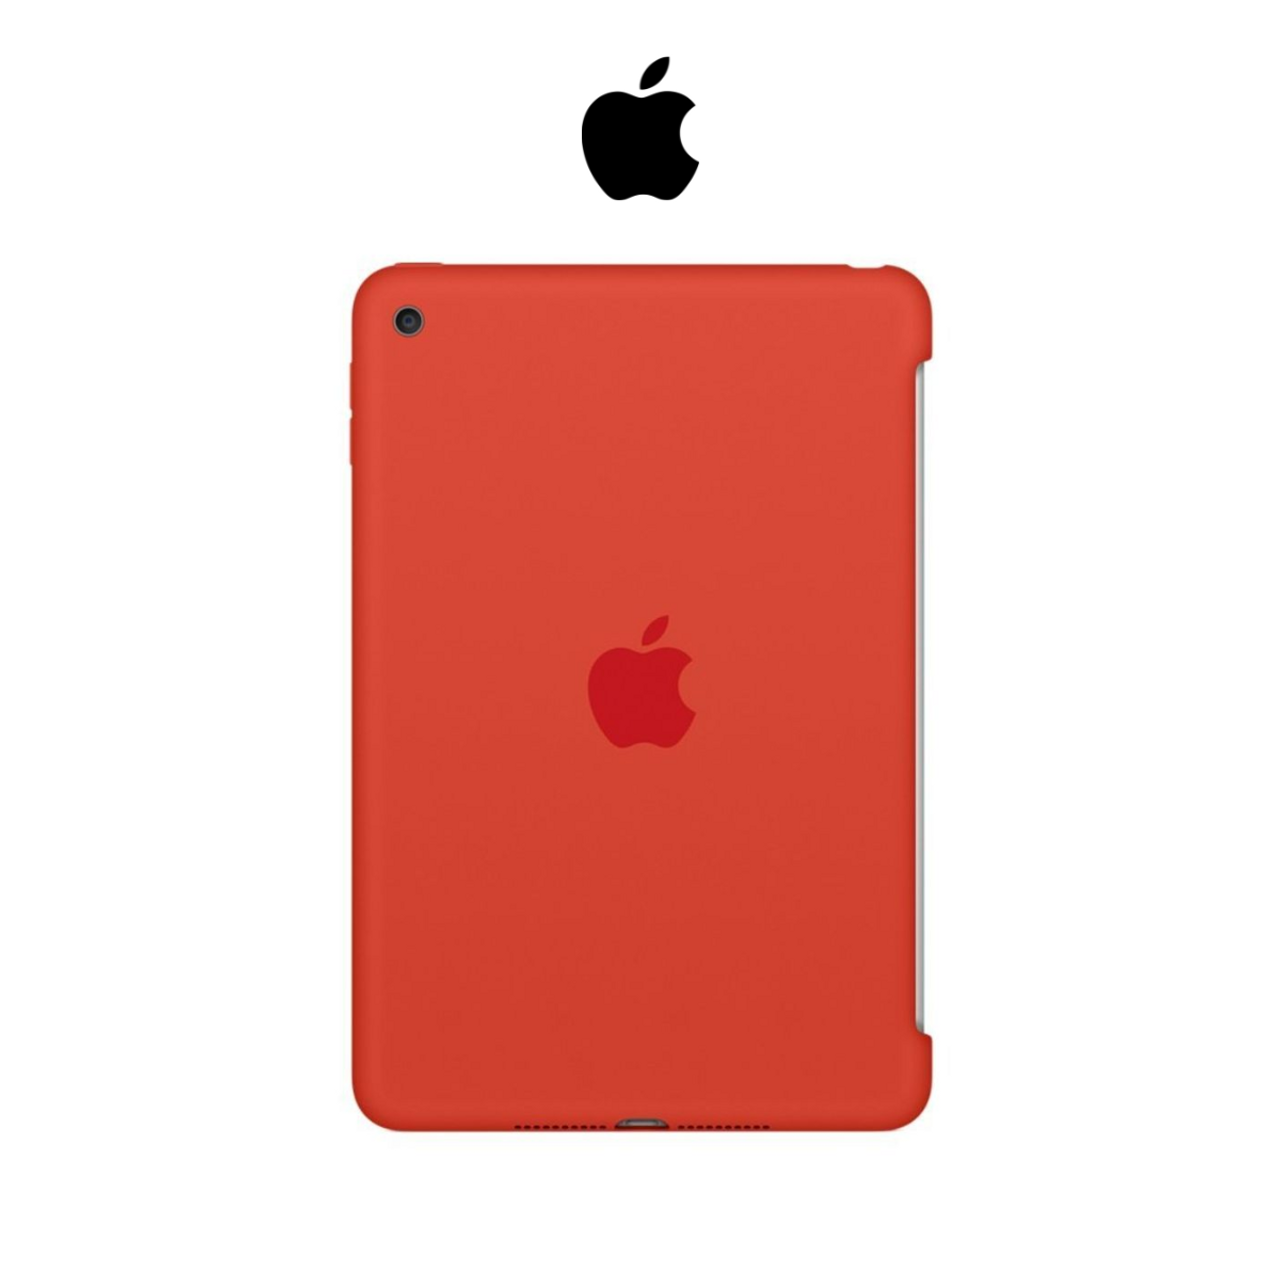 Apple iPad mini 4 Silicone Case product image